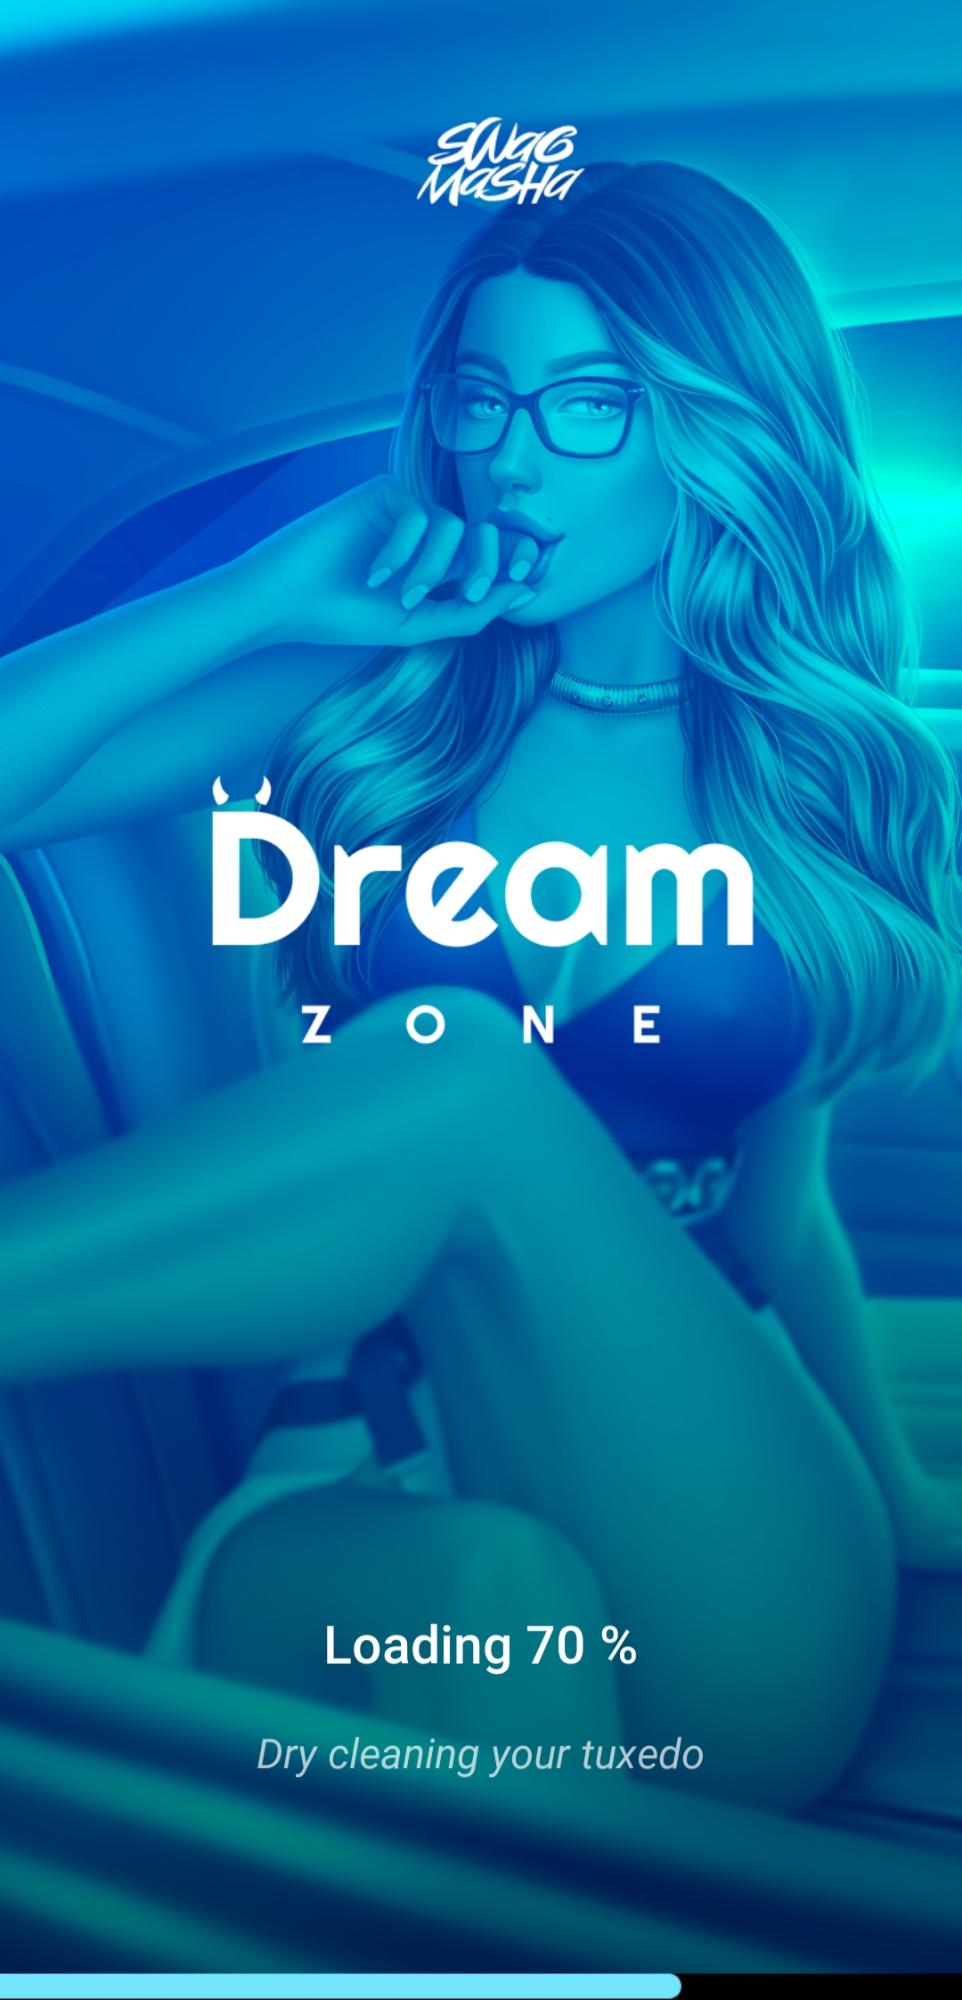 Dream zone sex scenes